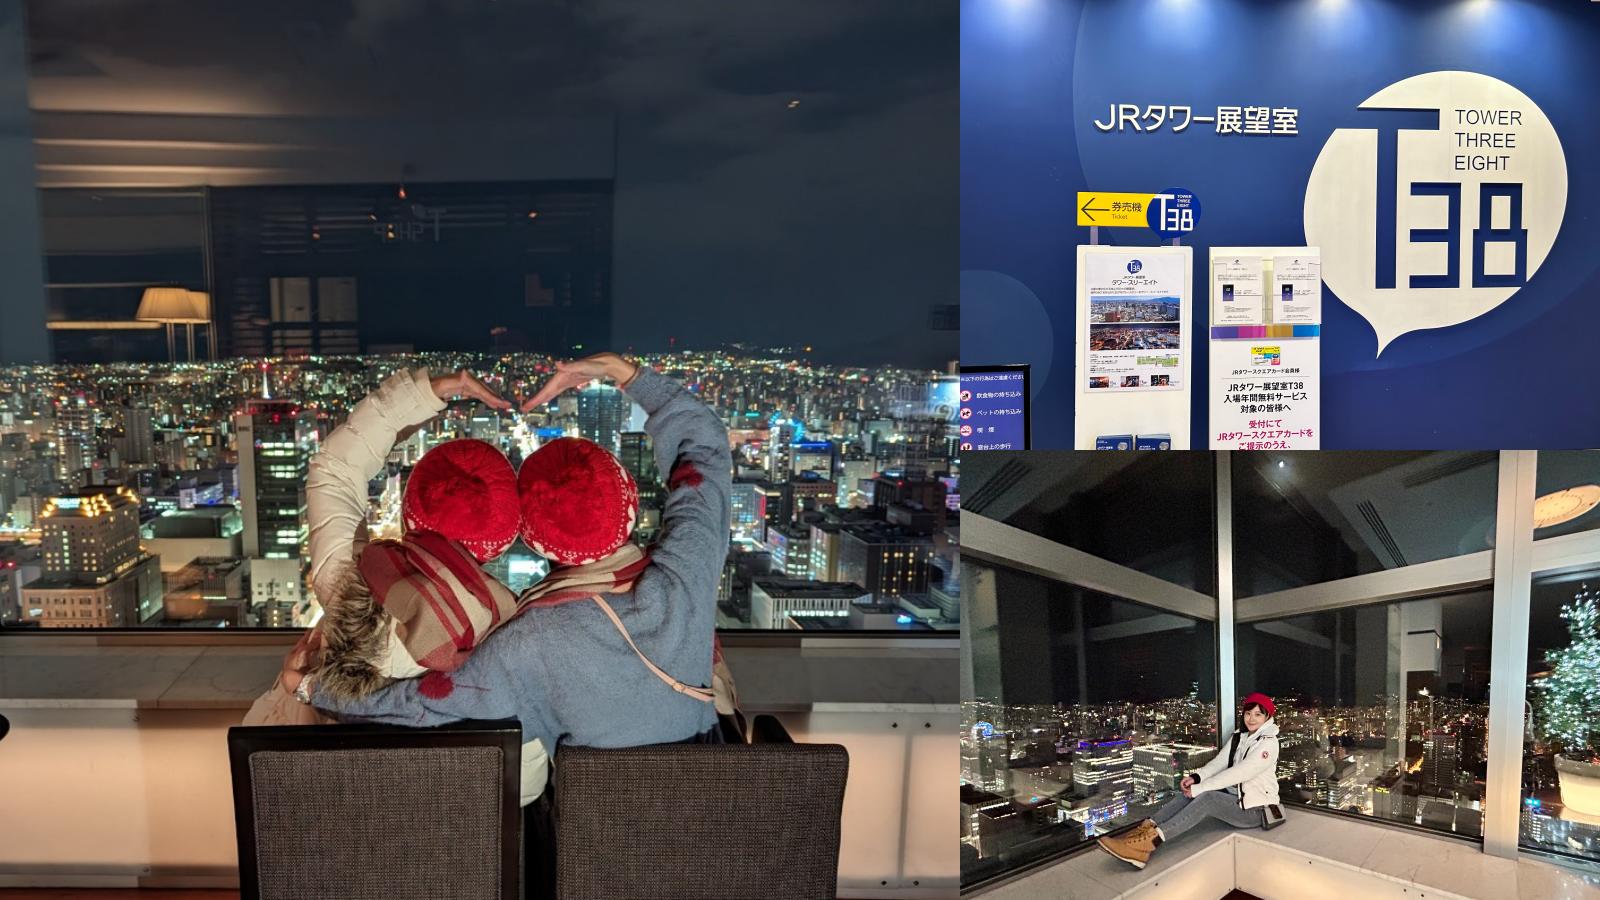 ☆【北海道】JR 塔展望室 T38。北海道最高觀景臺360度高空夜景，門票+下午茶套票先買起來！ @凱的日本食尚日記